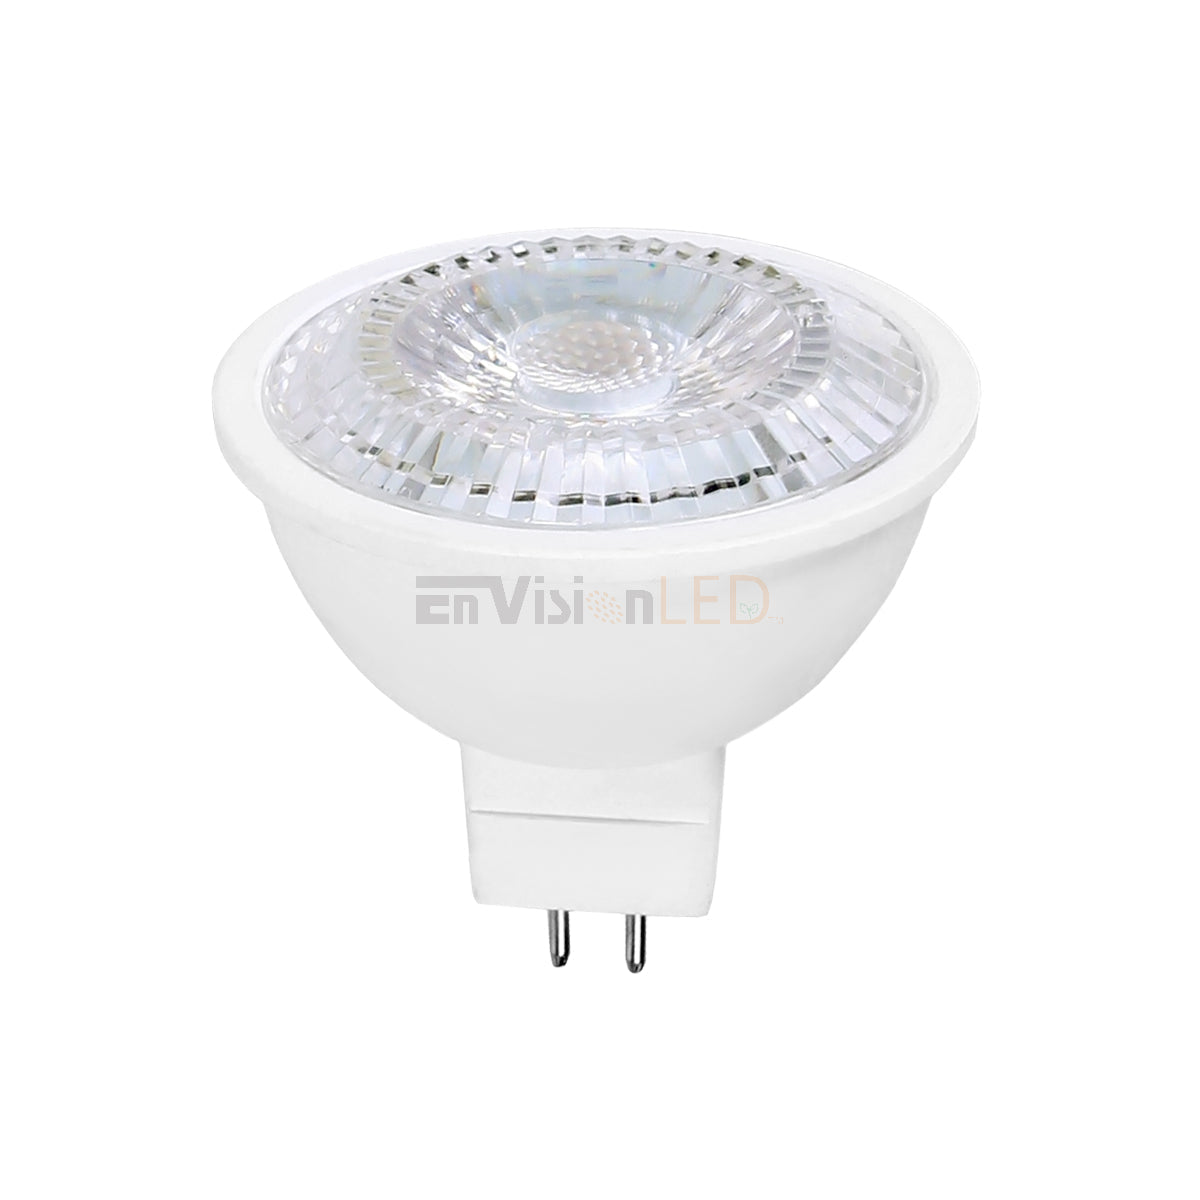 ChiliTec LED Strahler MR16 H40 SMD 120°, 3000k, 280lm, 12V/3W, warmweiß, MR16, Lampen, LED-Beleuchtung, Beleuchtung, Kraft & Saft